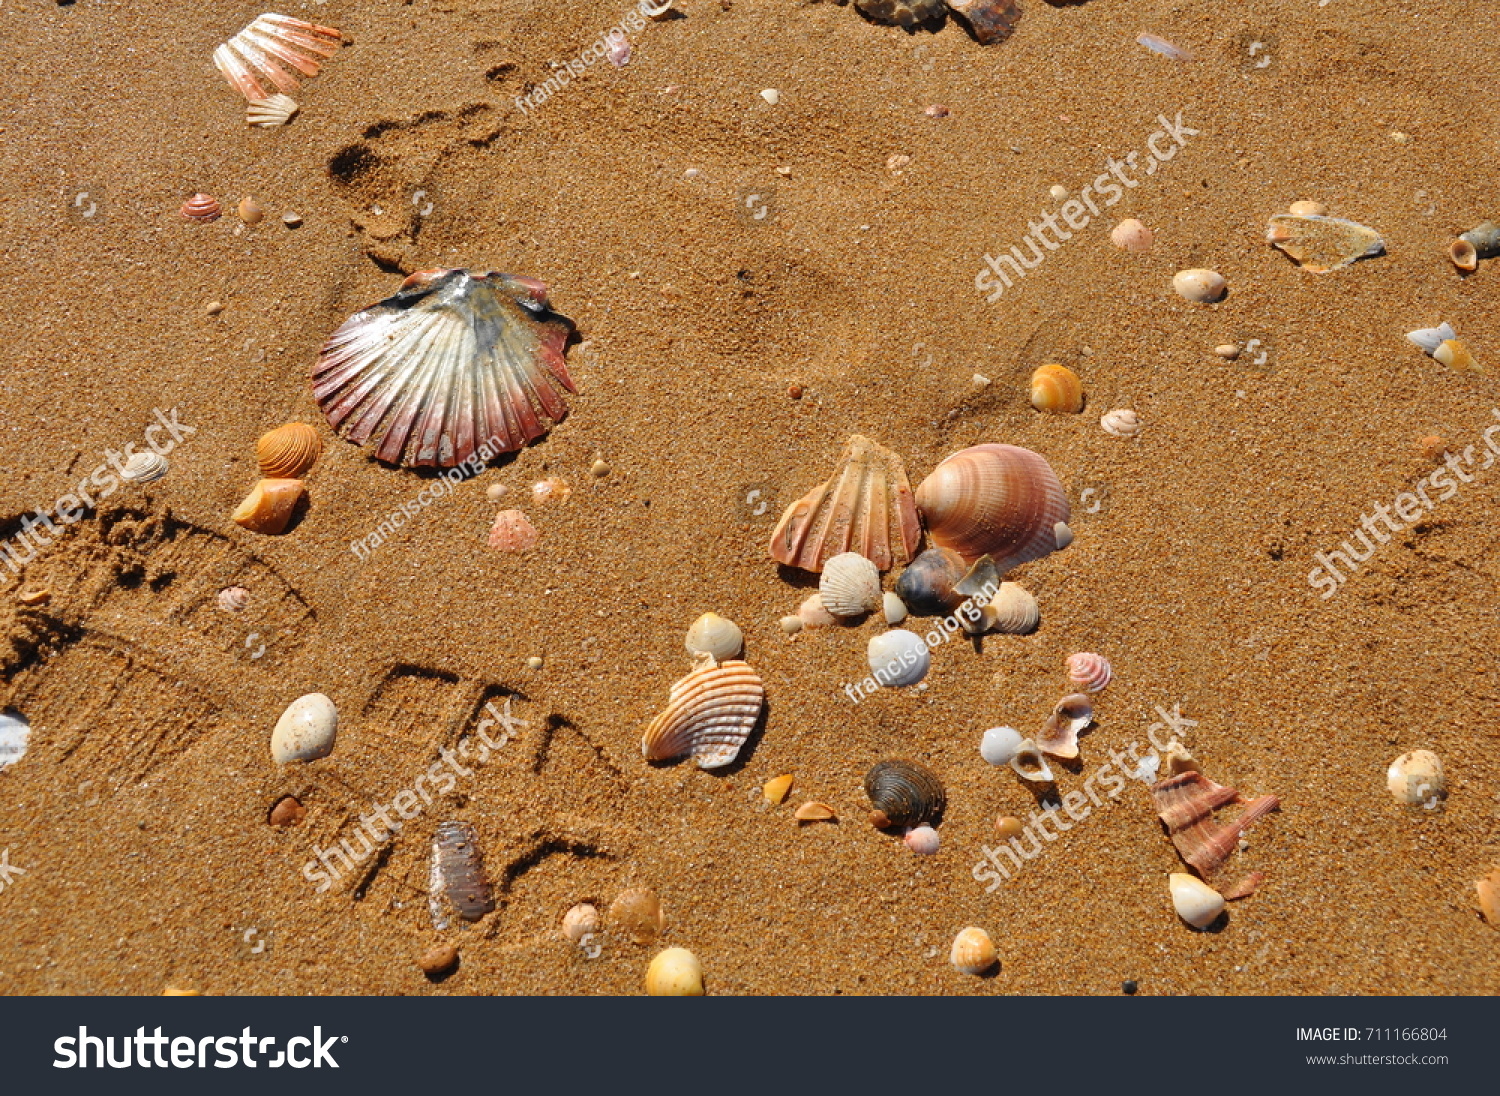 shell, sand, seashell #711166804